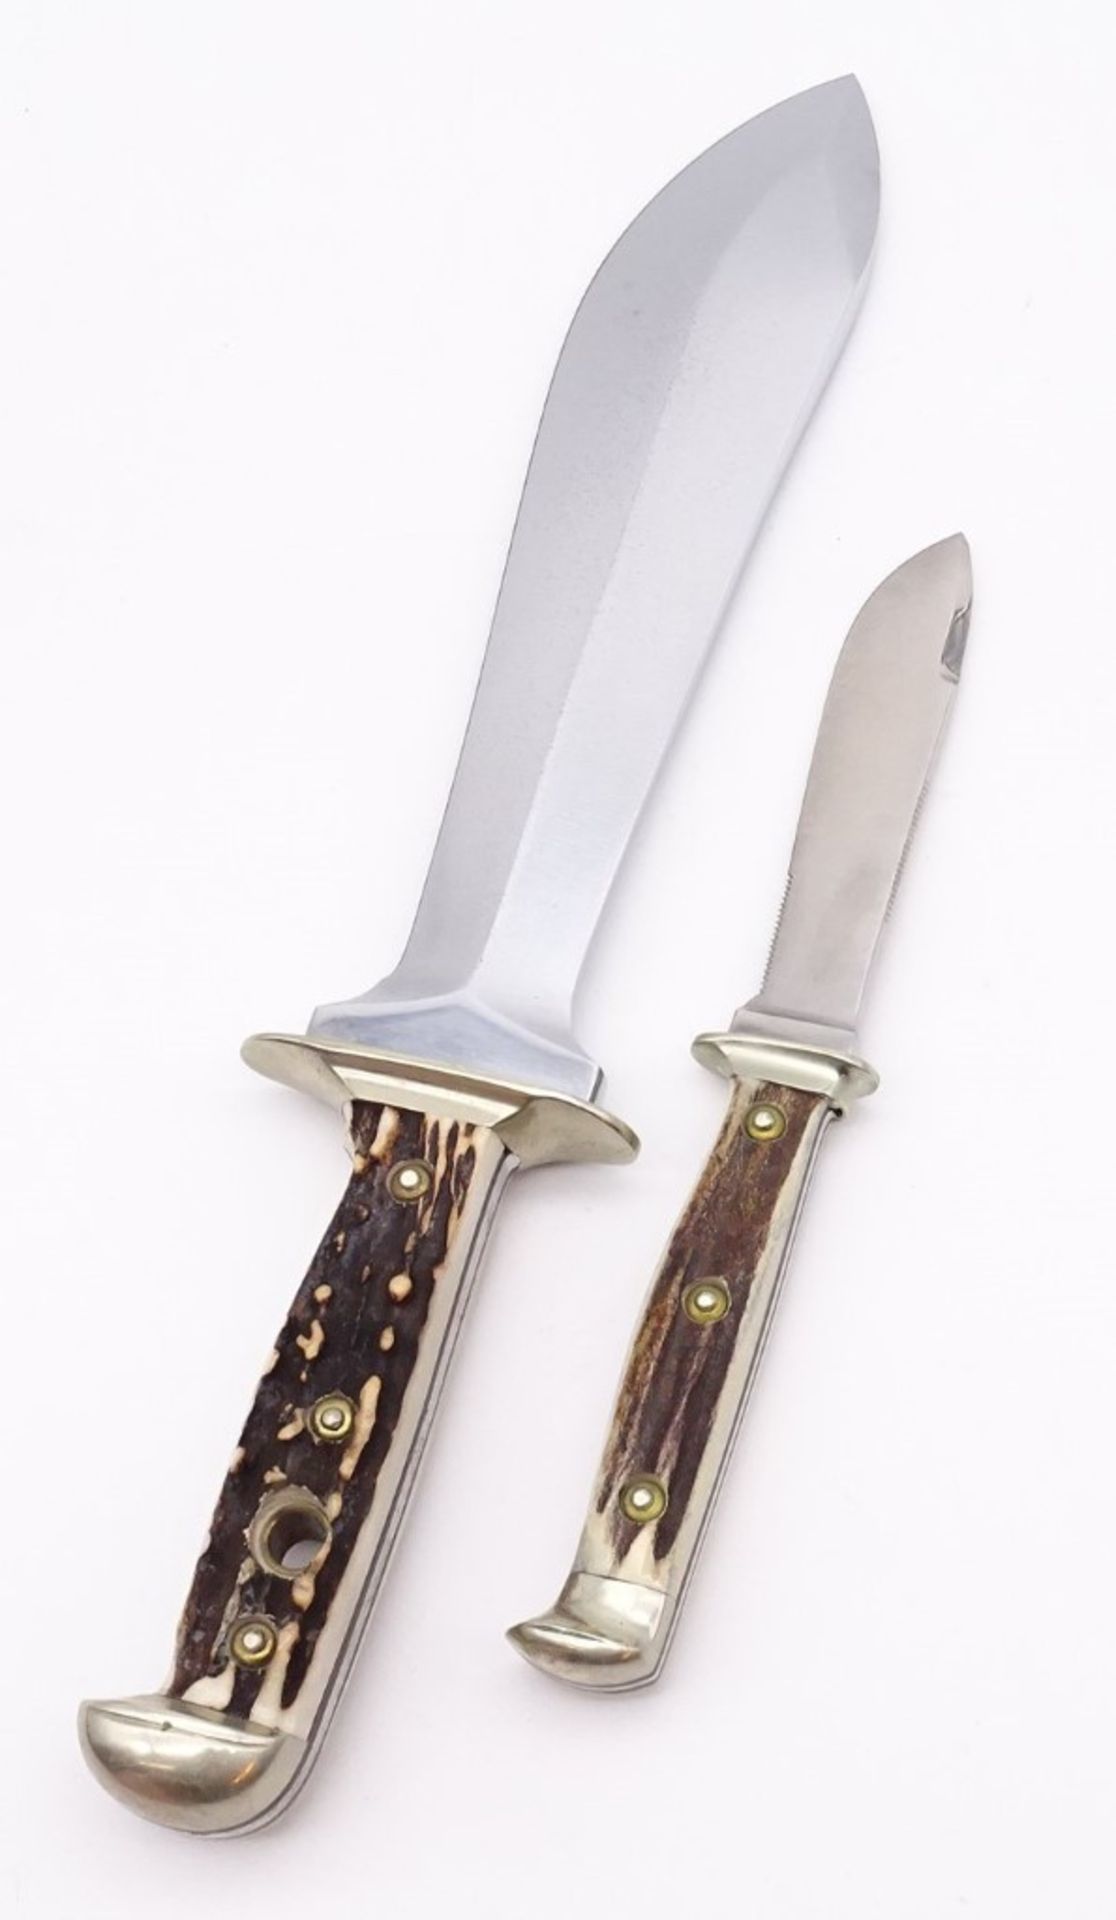 PUMA Waidbesteck Waidblatt Messer in Holzkasten, No. 3588, L. 33,0cm, mit Scheide u. kl. Messer - Bild 6 aus 6